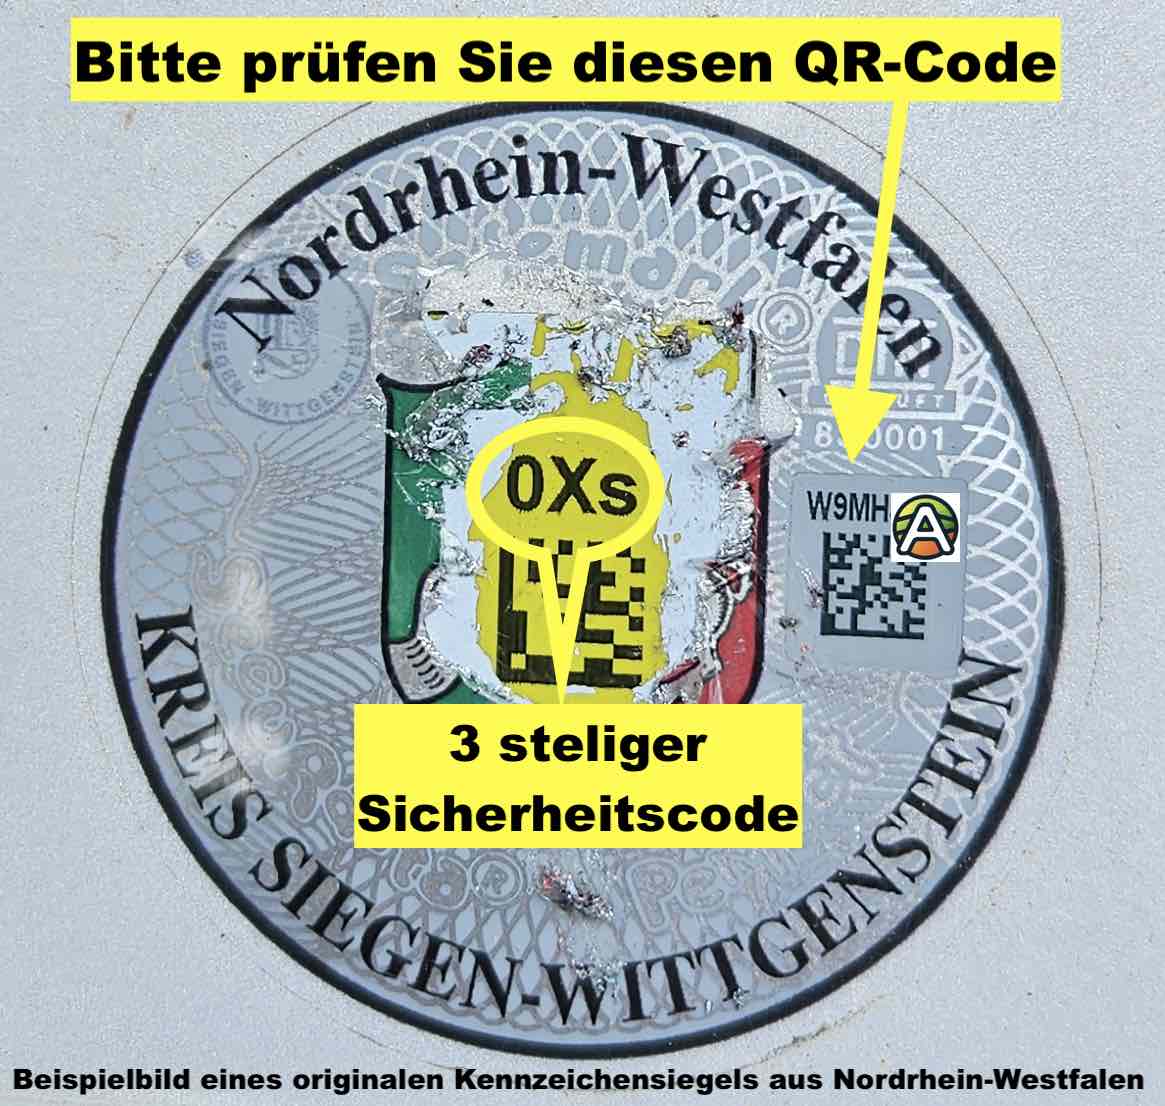 Beispielbild eines originalen Kennzeichensiegels aus Nordrhein-Westfalen